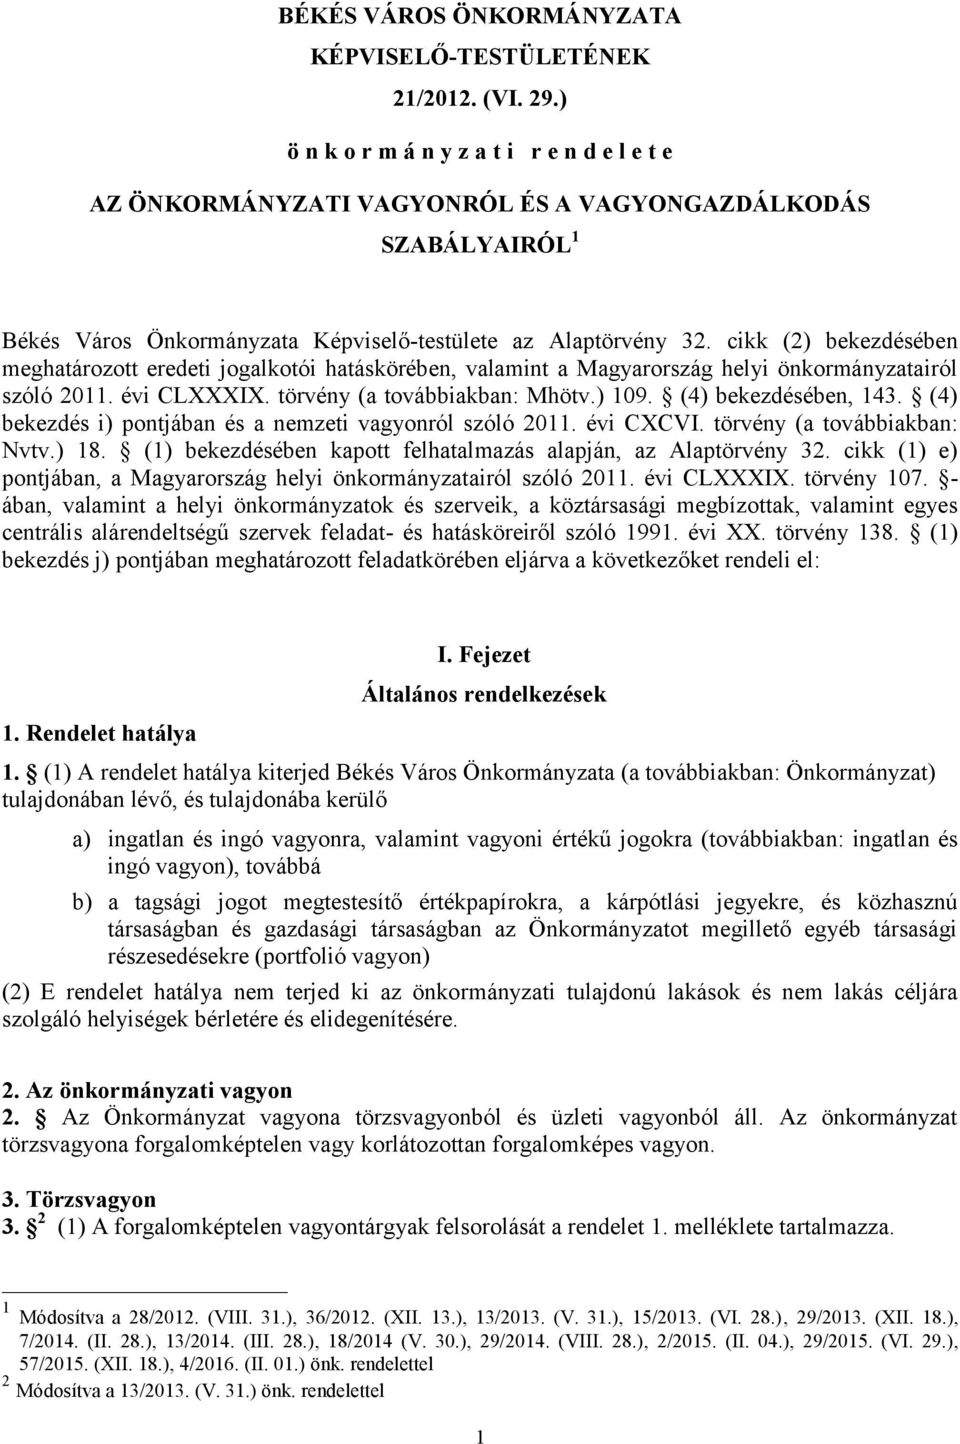 cikk (2) bekezdésében meghatározott eredeti jogalkotói hatáskörében, valamint a Magyarország helyi önkormányzatairól szóló 2011. évi CLXXXIX. törvény (a továbbiakban: Mhötv.) 109.